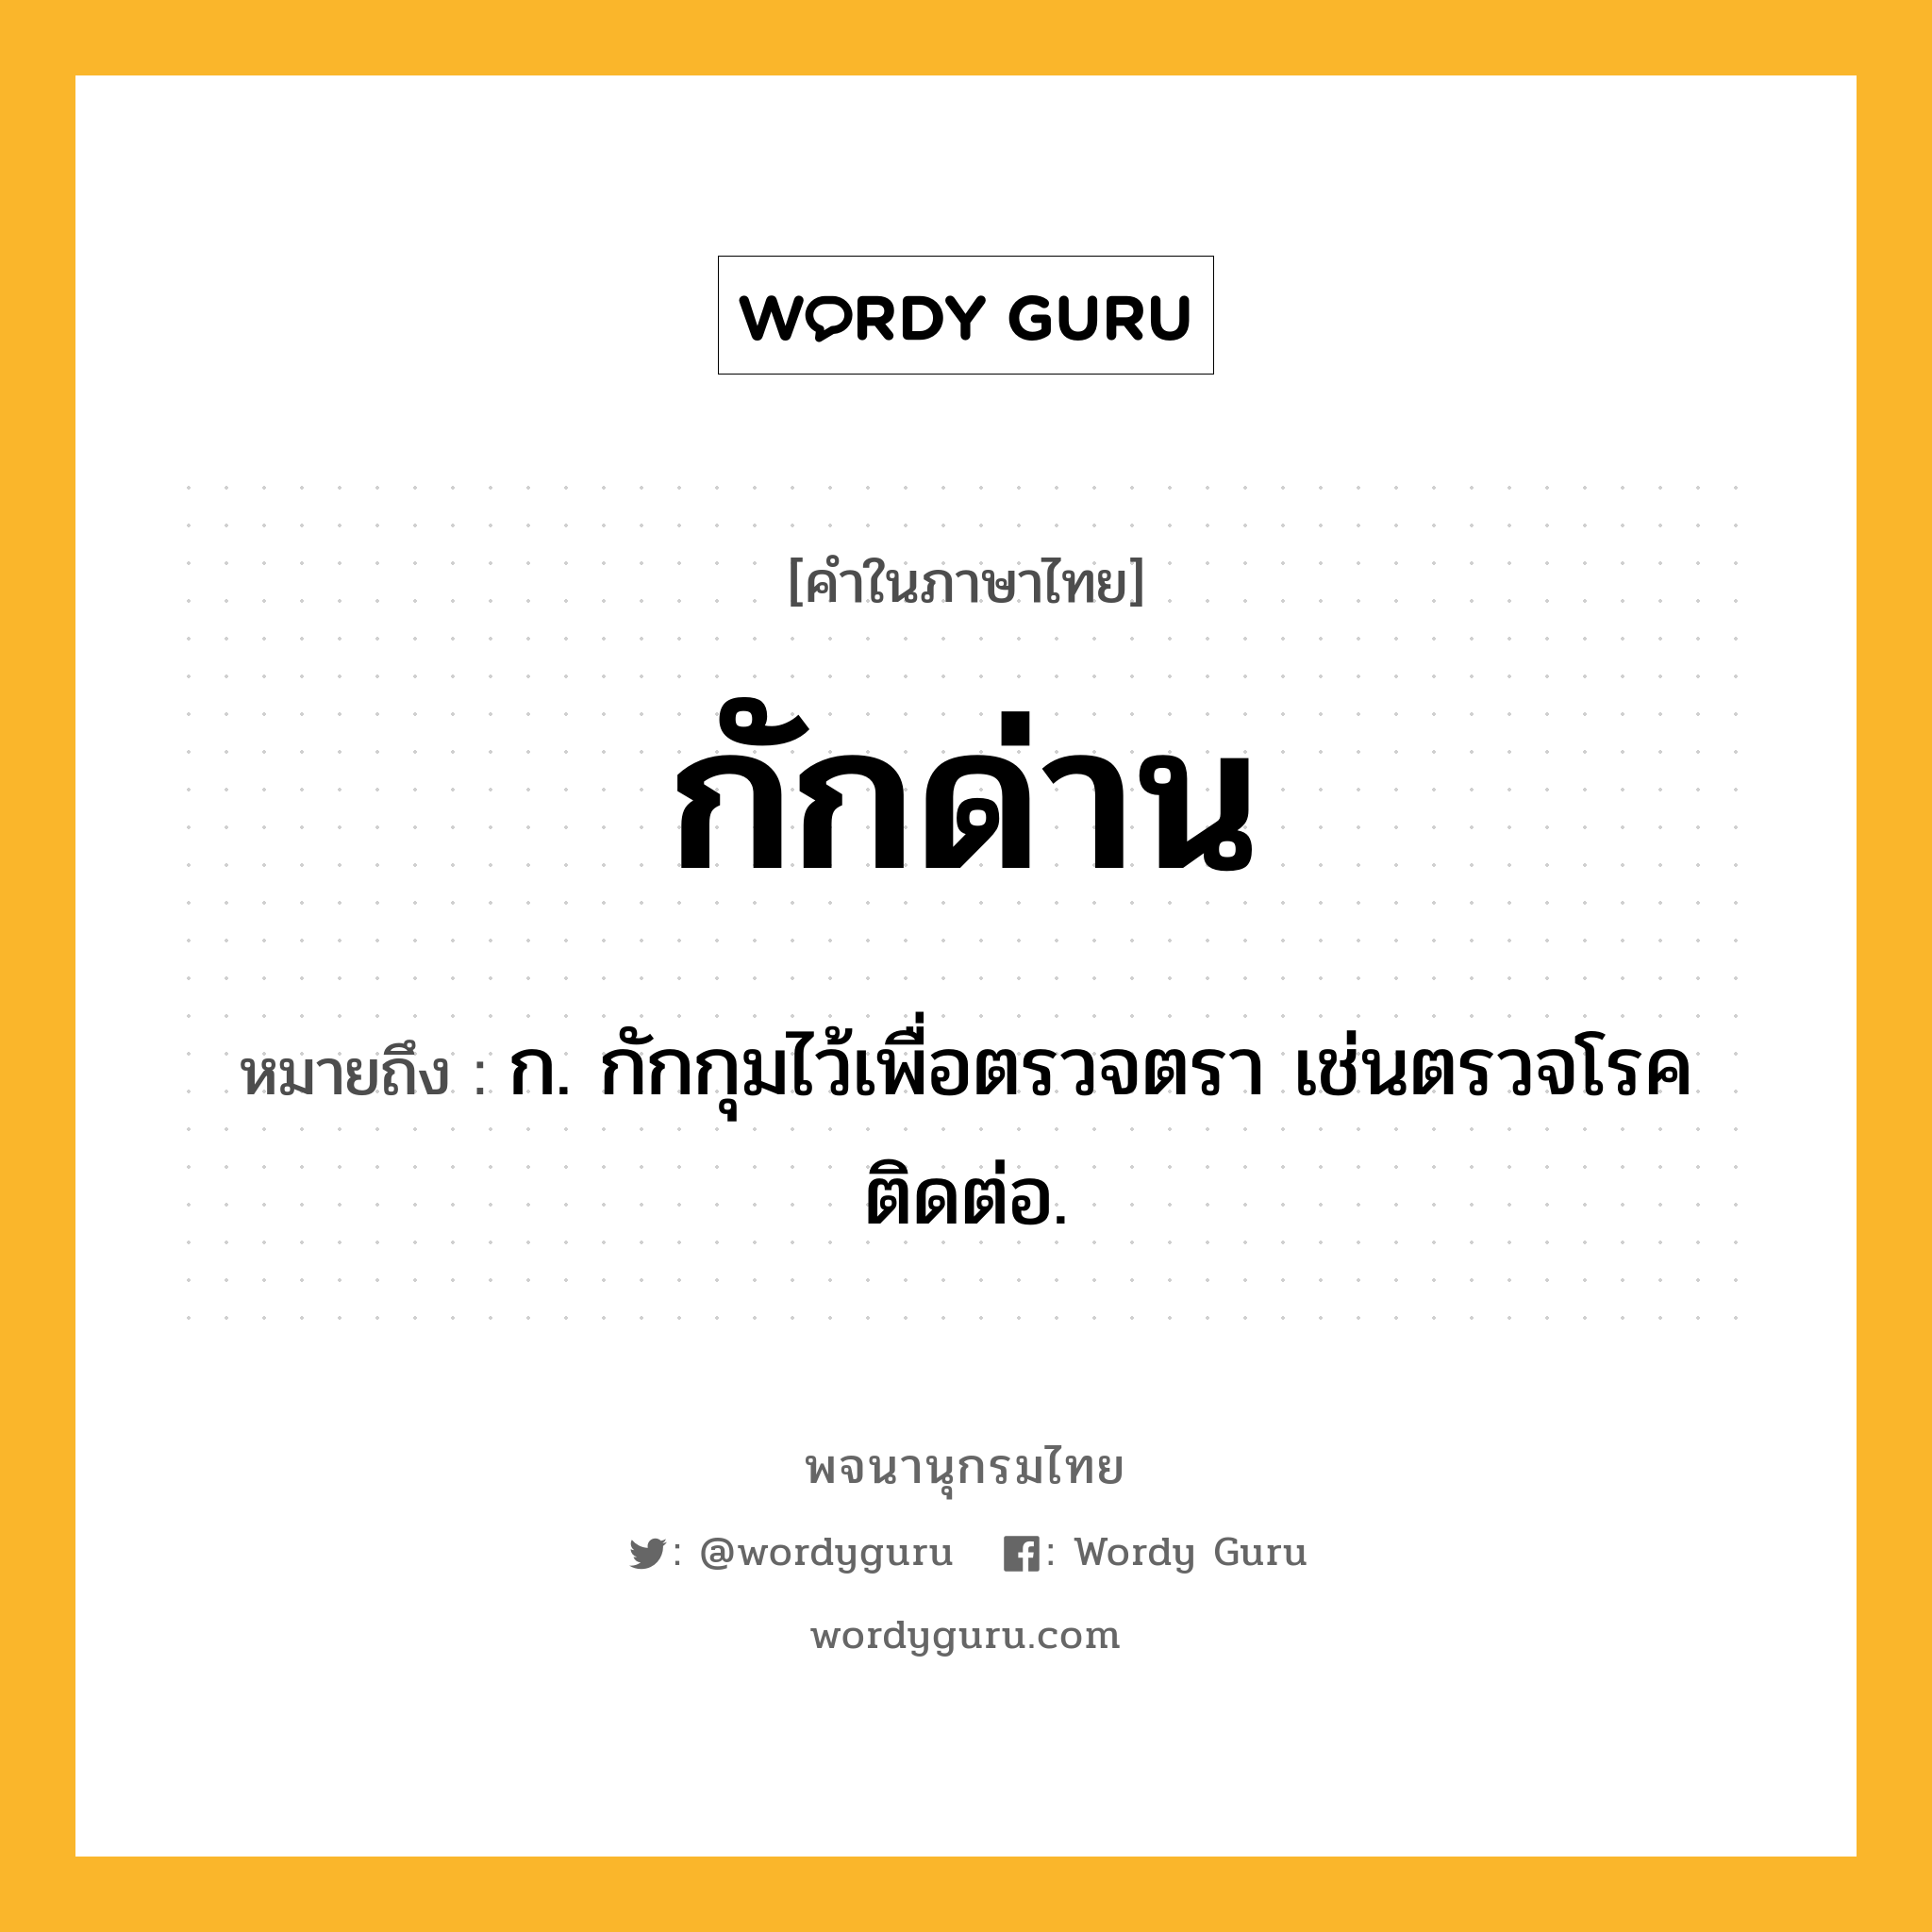 กักด่าน ความหมาย หมายถึงอะไร?, คำในภาษาไทย กักด่าน หมายถึง ก. กักกุมไว้เพื่อตรวจตรา เช่นตรวจโรคติดต่อ.